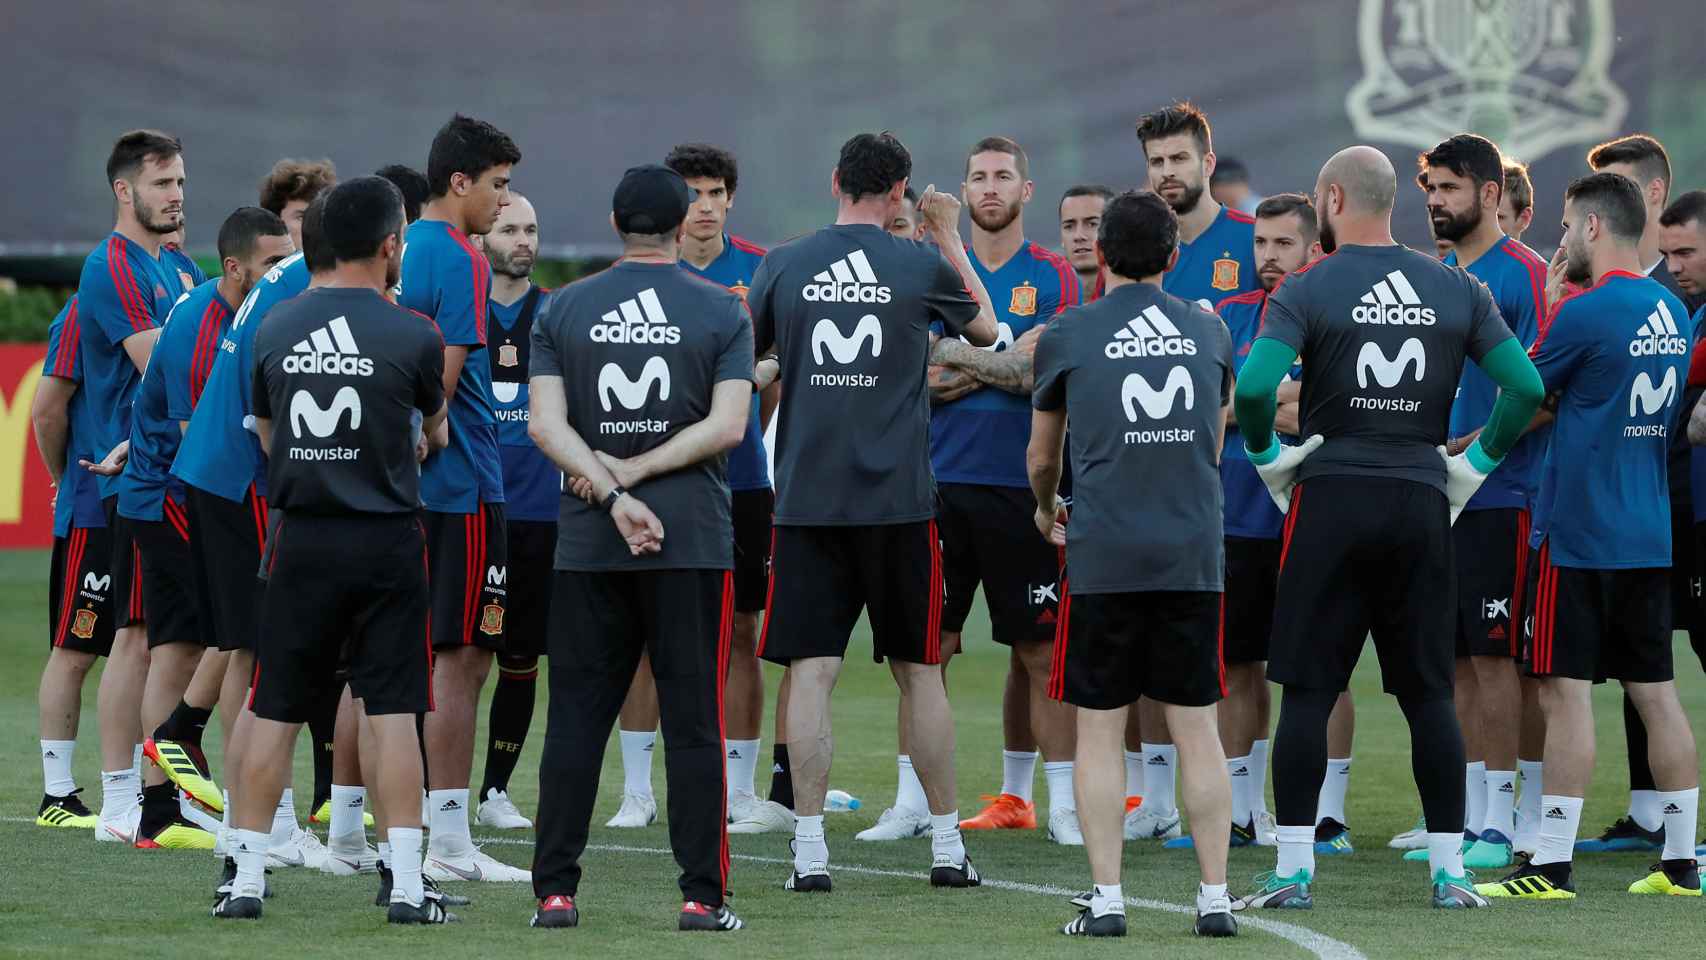 Los jugadores de la selección española asisten a una charla de Fernando Hierro.